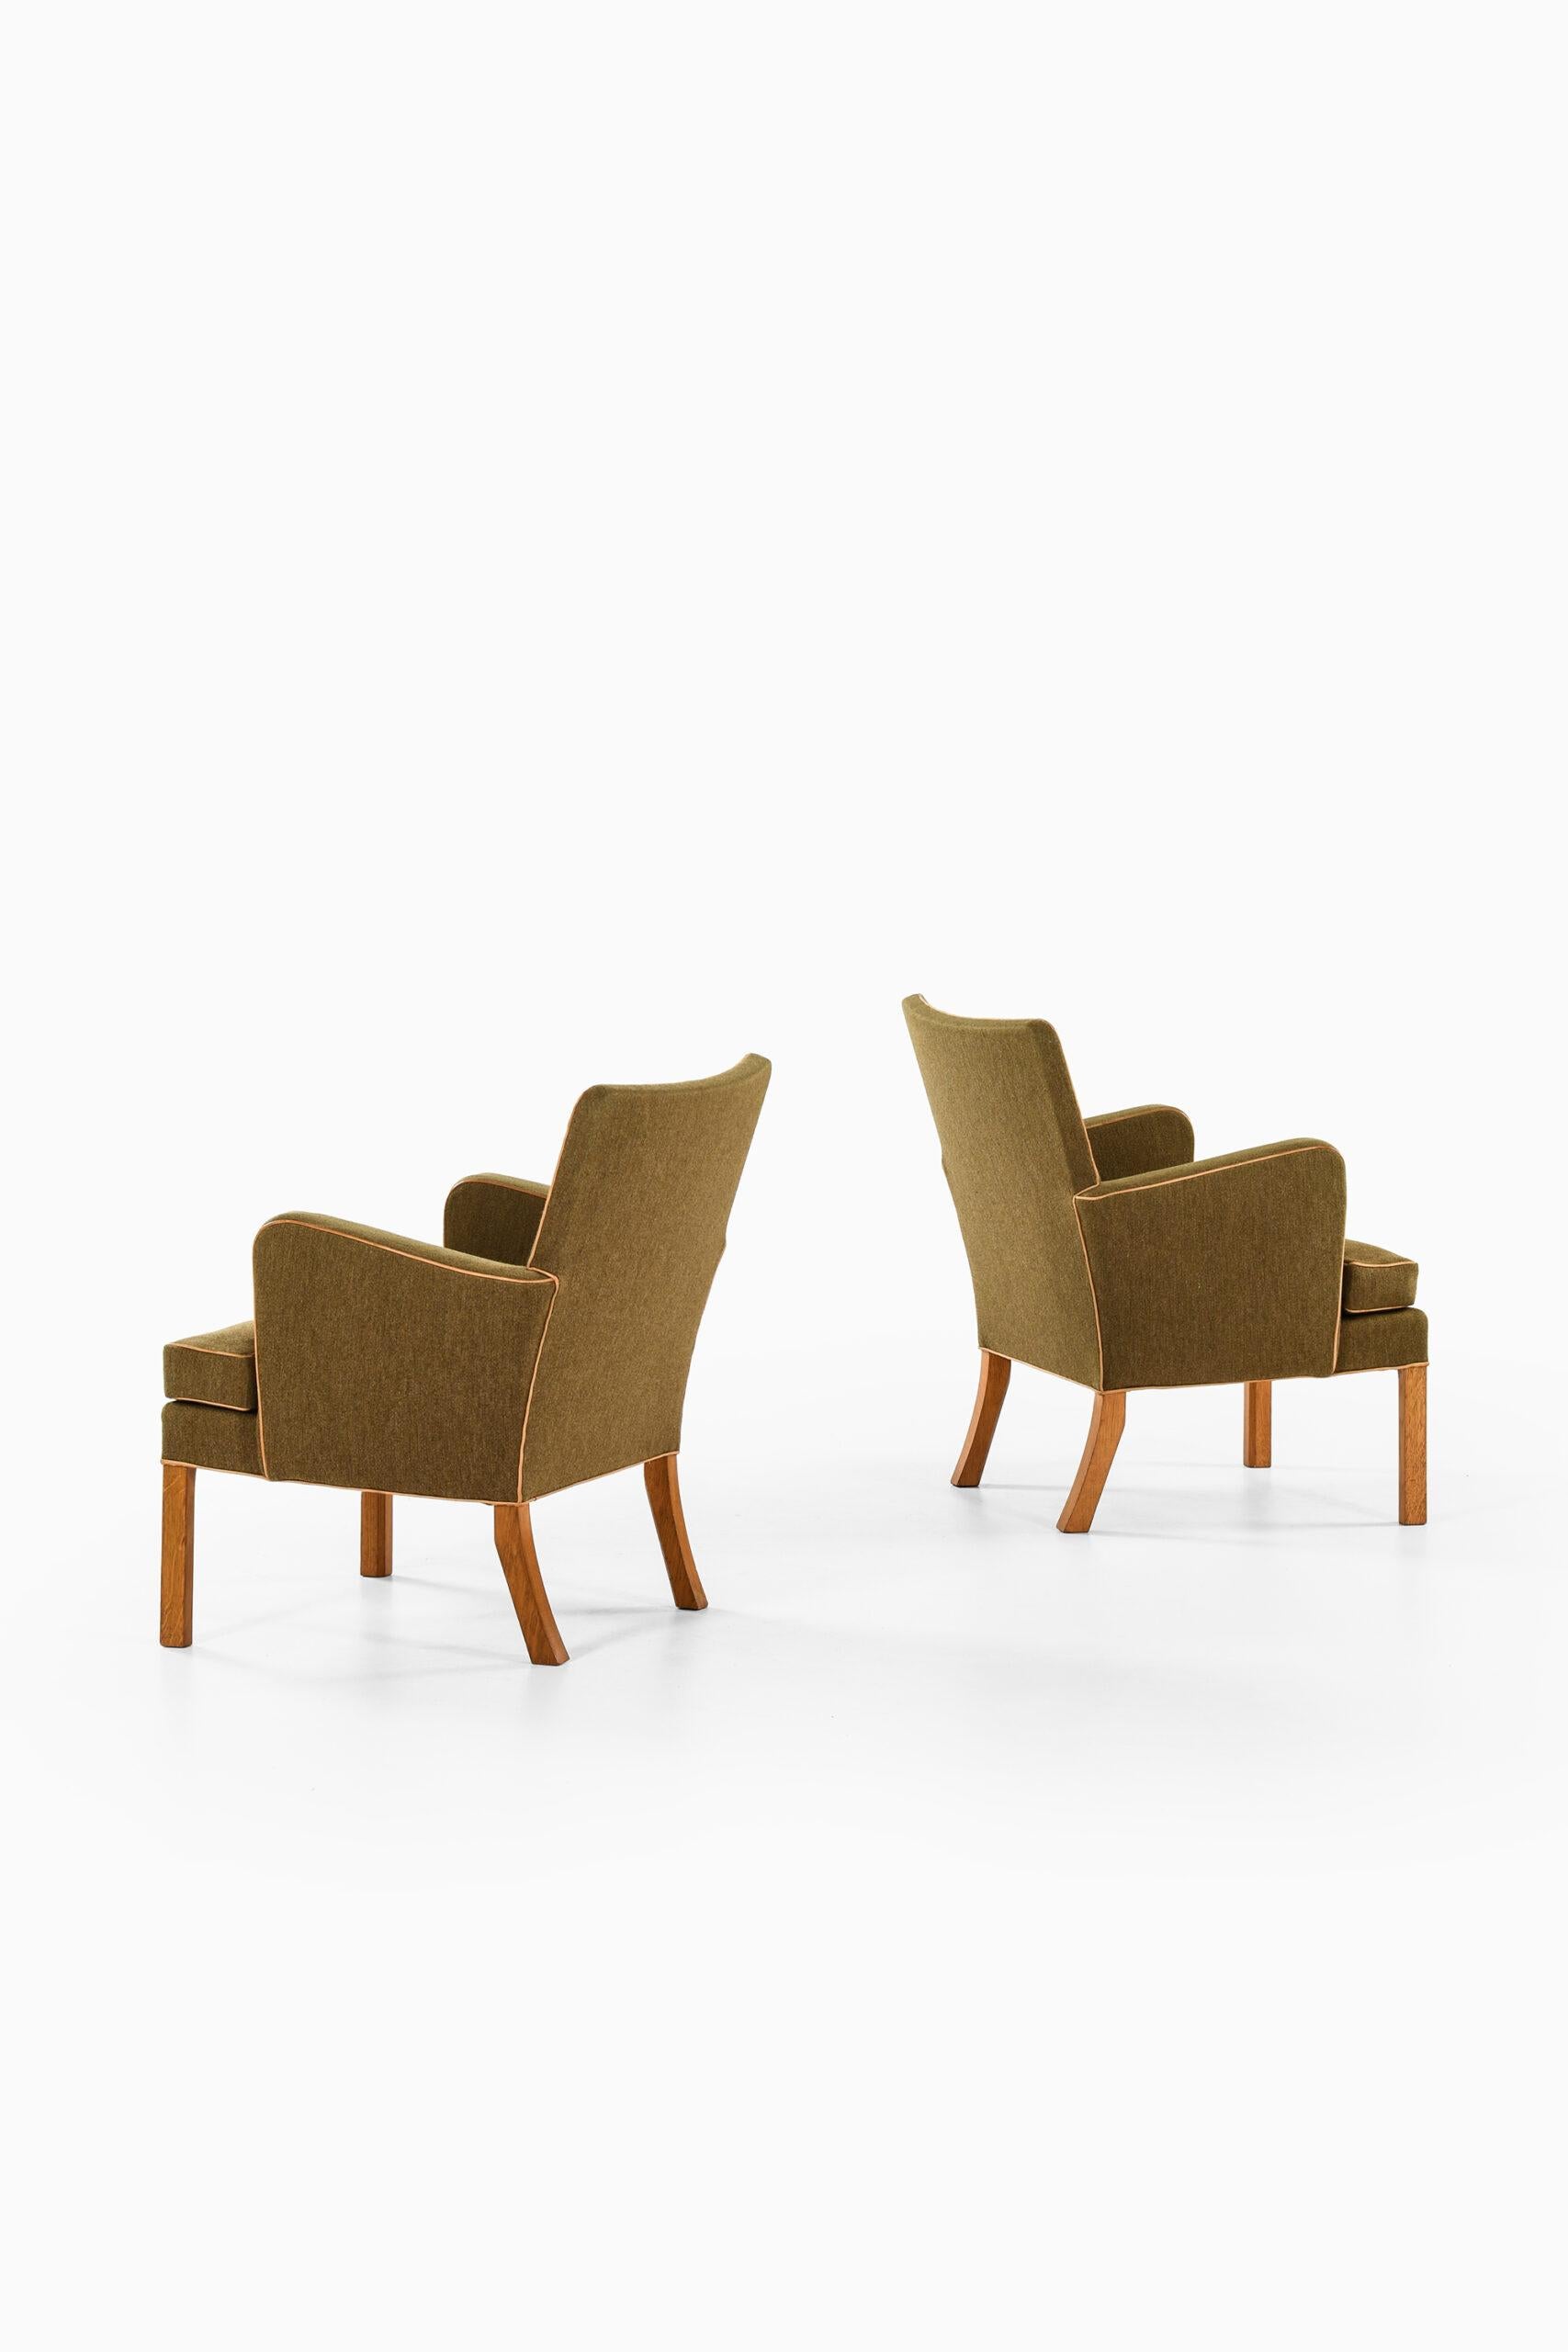 Oak Kaare Klint Easy Chairs Model 5313 Produced by Cabinetmaker Rud Rasmussen For Sale